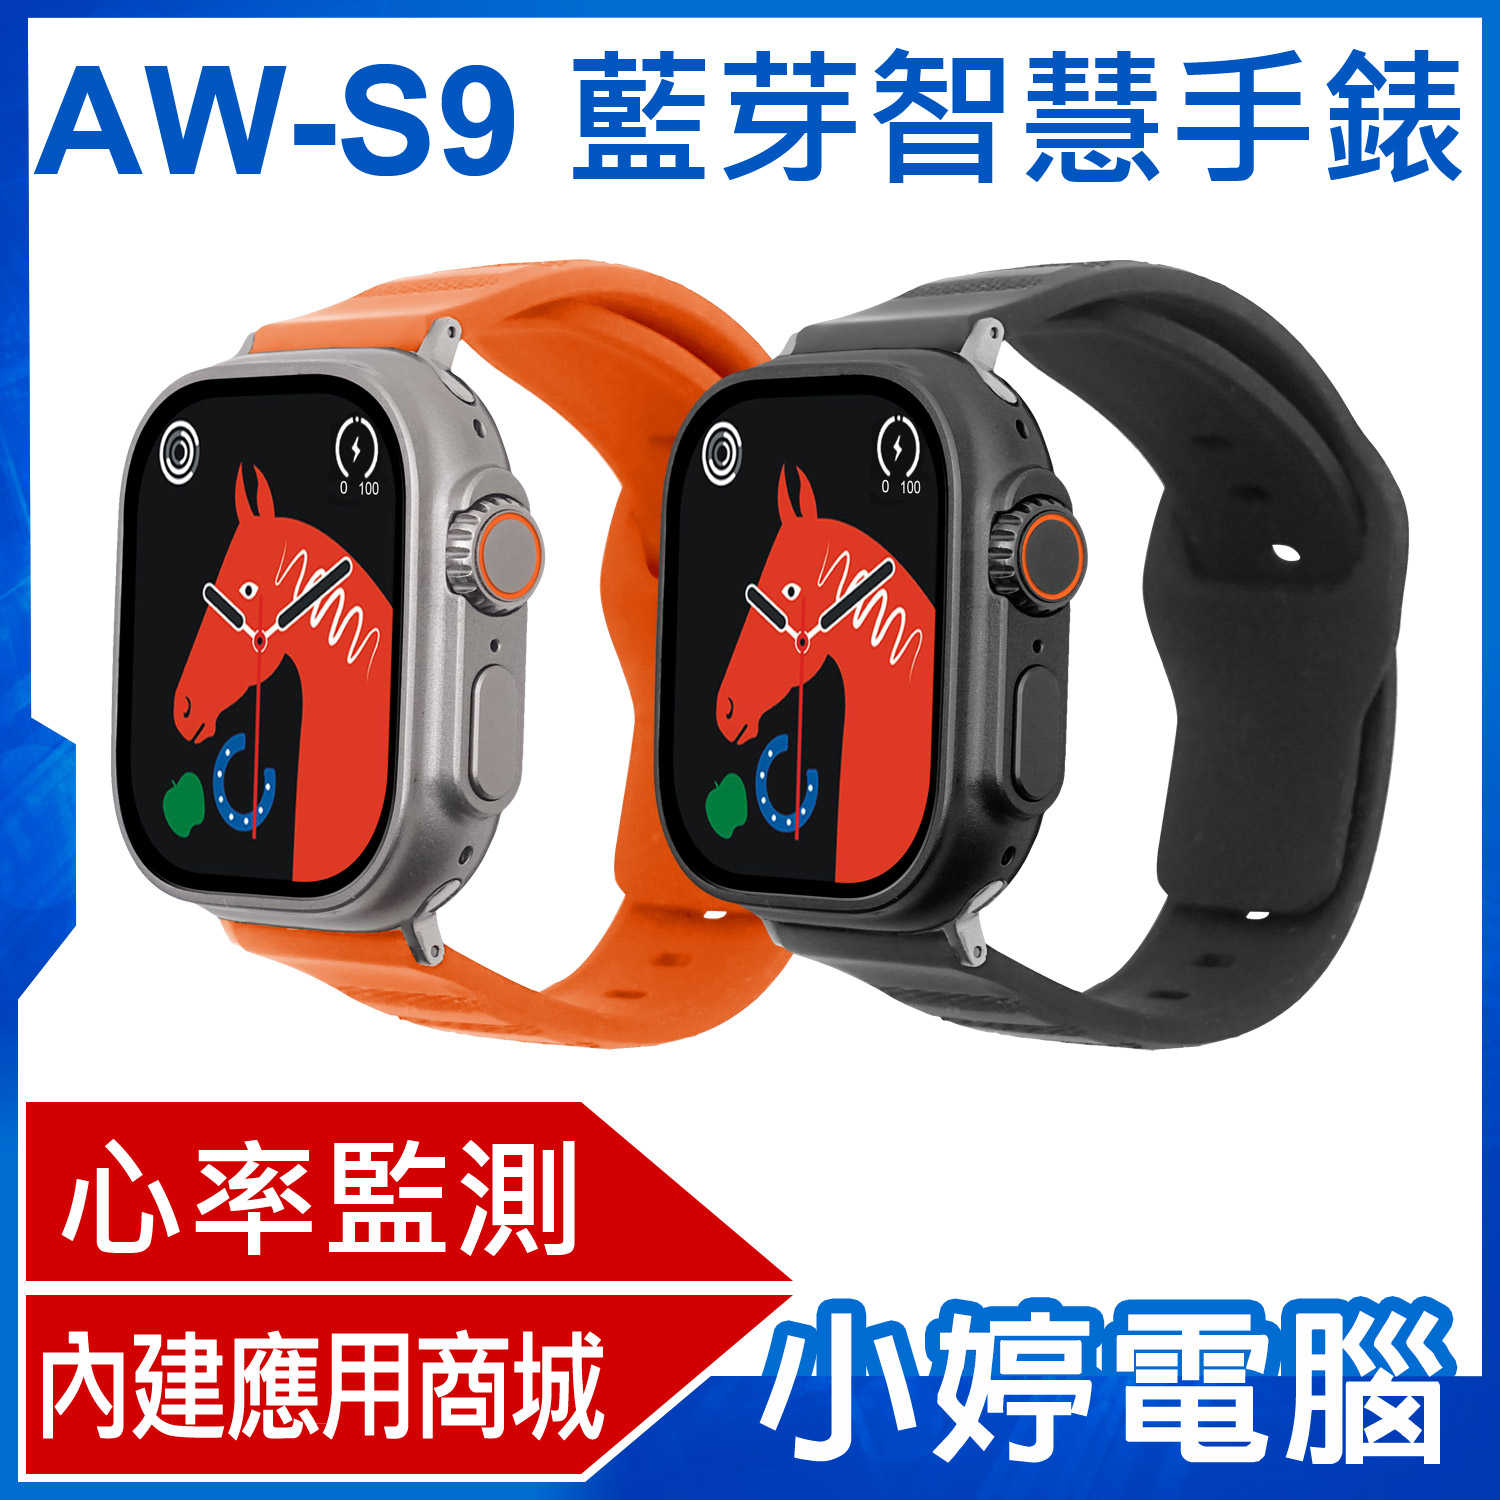 【小婷電腦】AW-S9 藍芽智慧手錶 心率監測 IPX67生活防水 門禁卡 應用商城 視訊通話